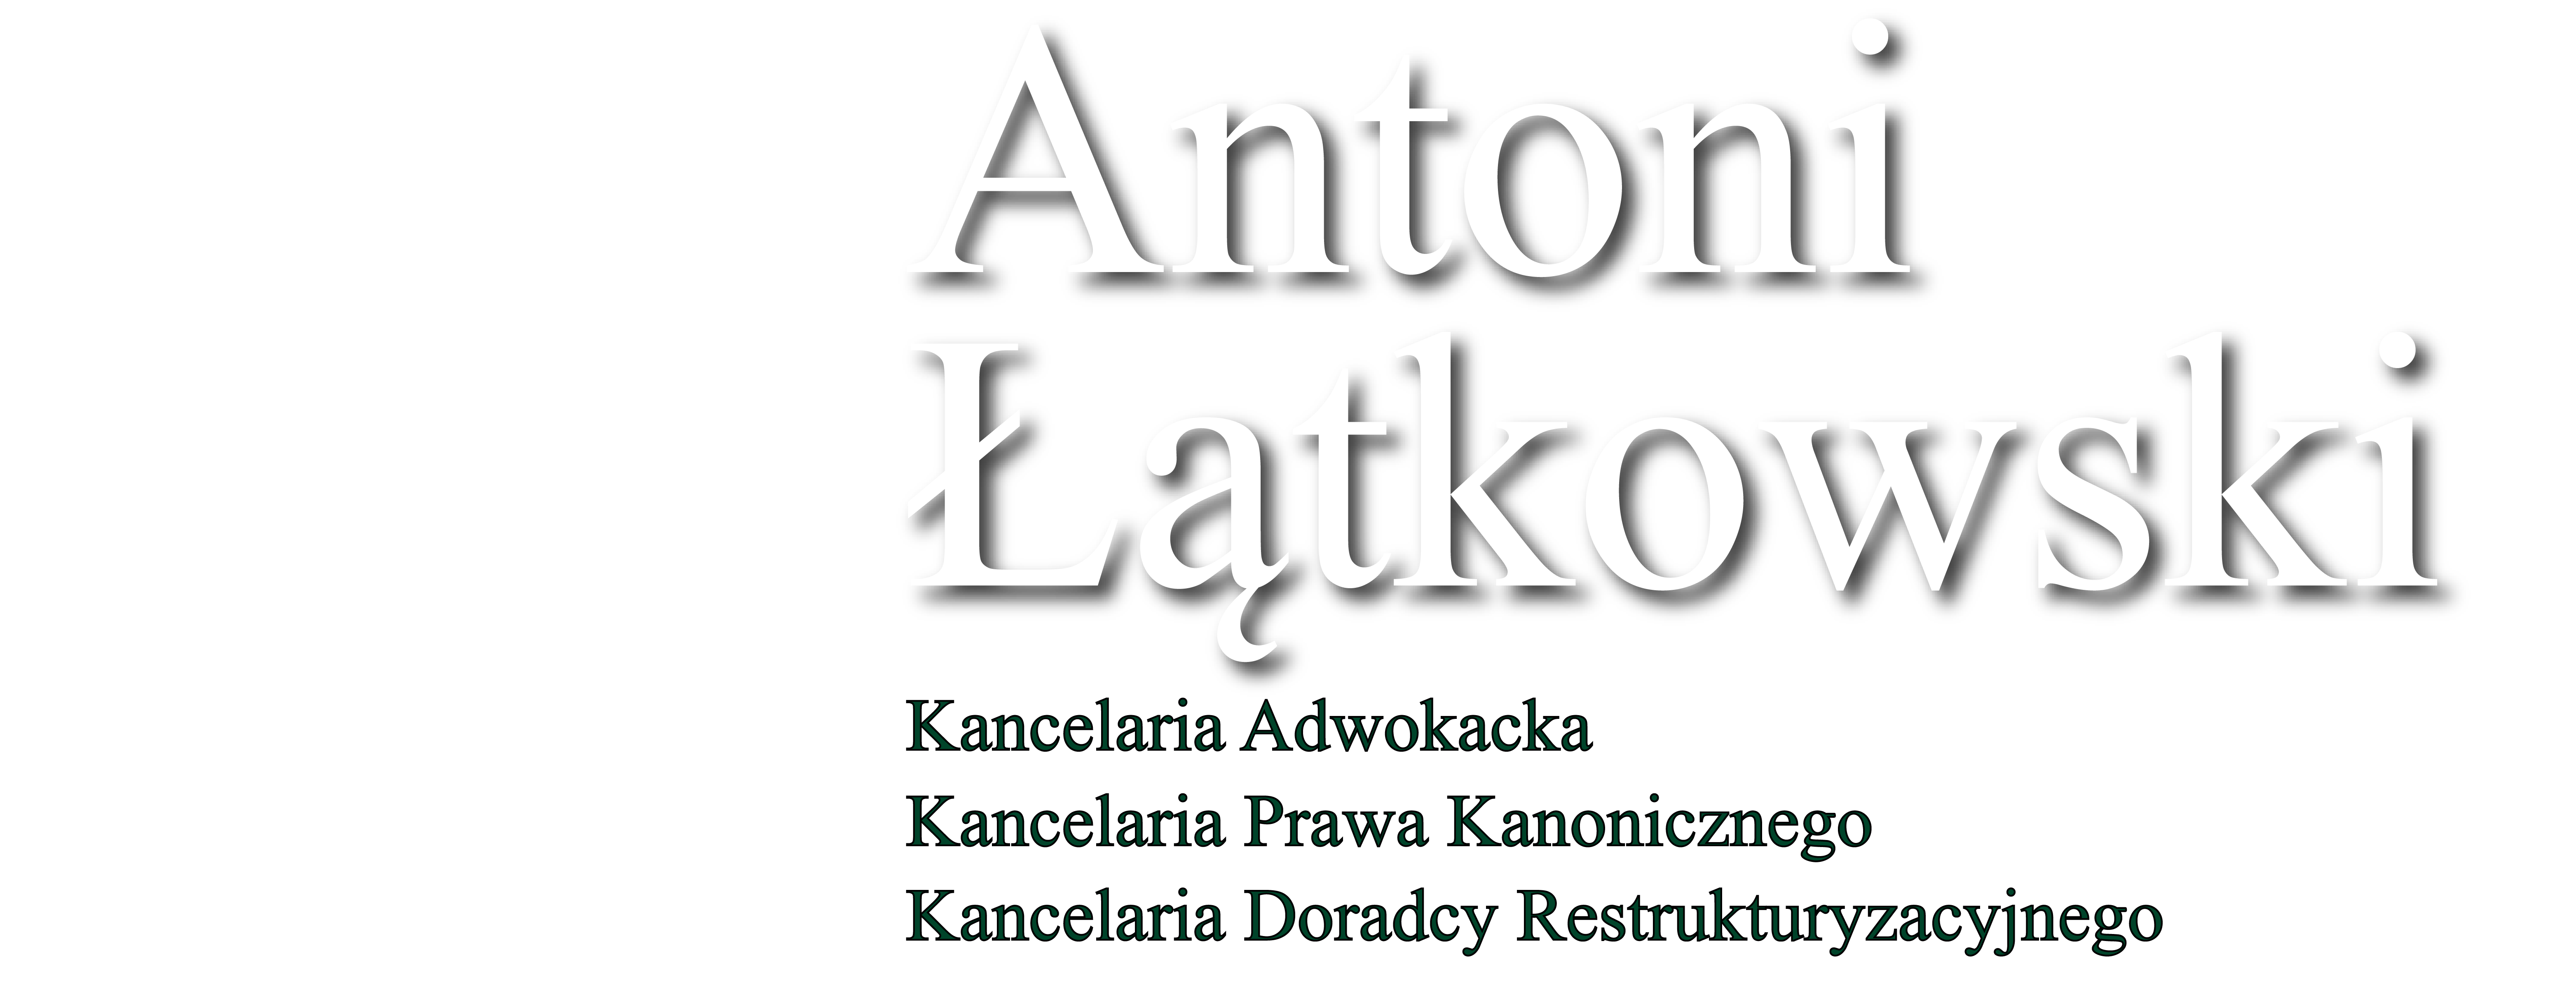 Kancelaria Adwokacka Kancelaria Prawa Kanonicznego Doradcy Restrukturyzacyjnego Antoni Łątkowski